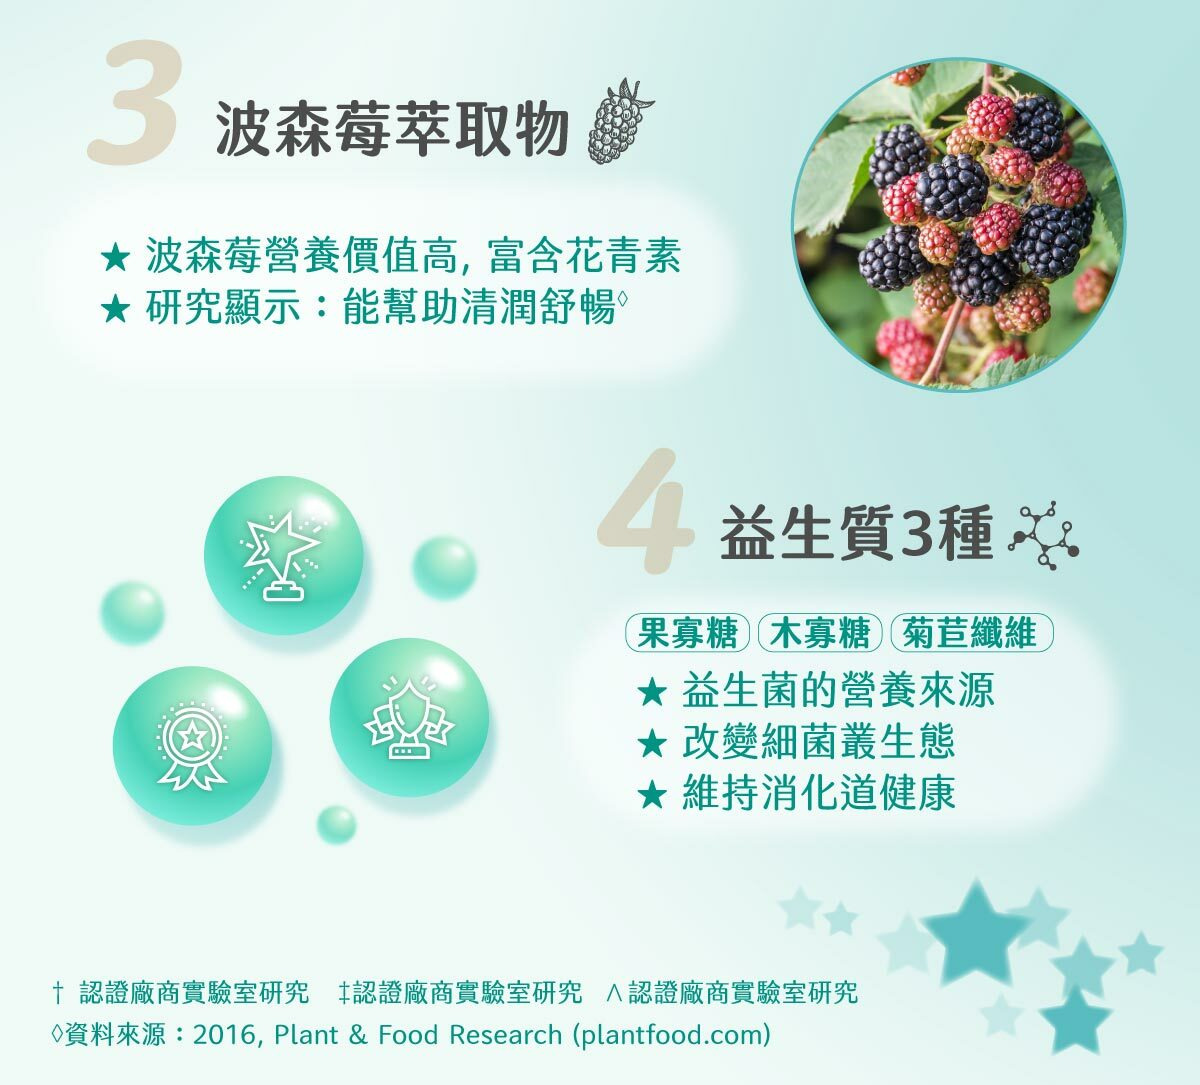 波森莓萃取物富含花青素，能幫助清潤舒暢，3種益生質改變菌叢生態，維持消化道健康